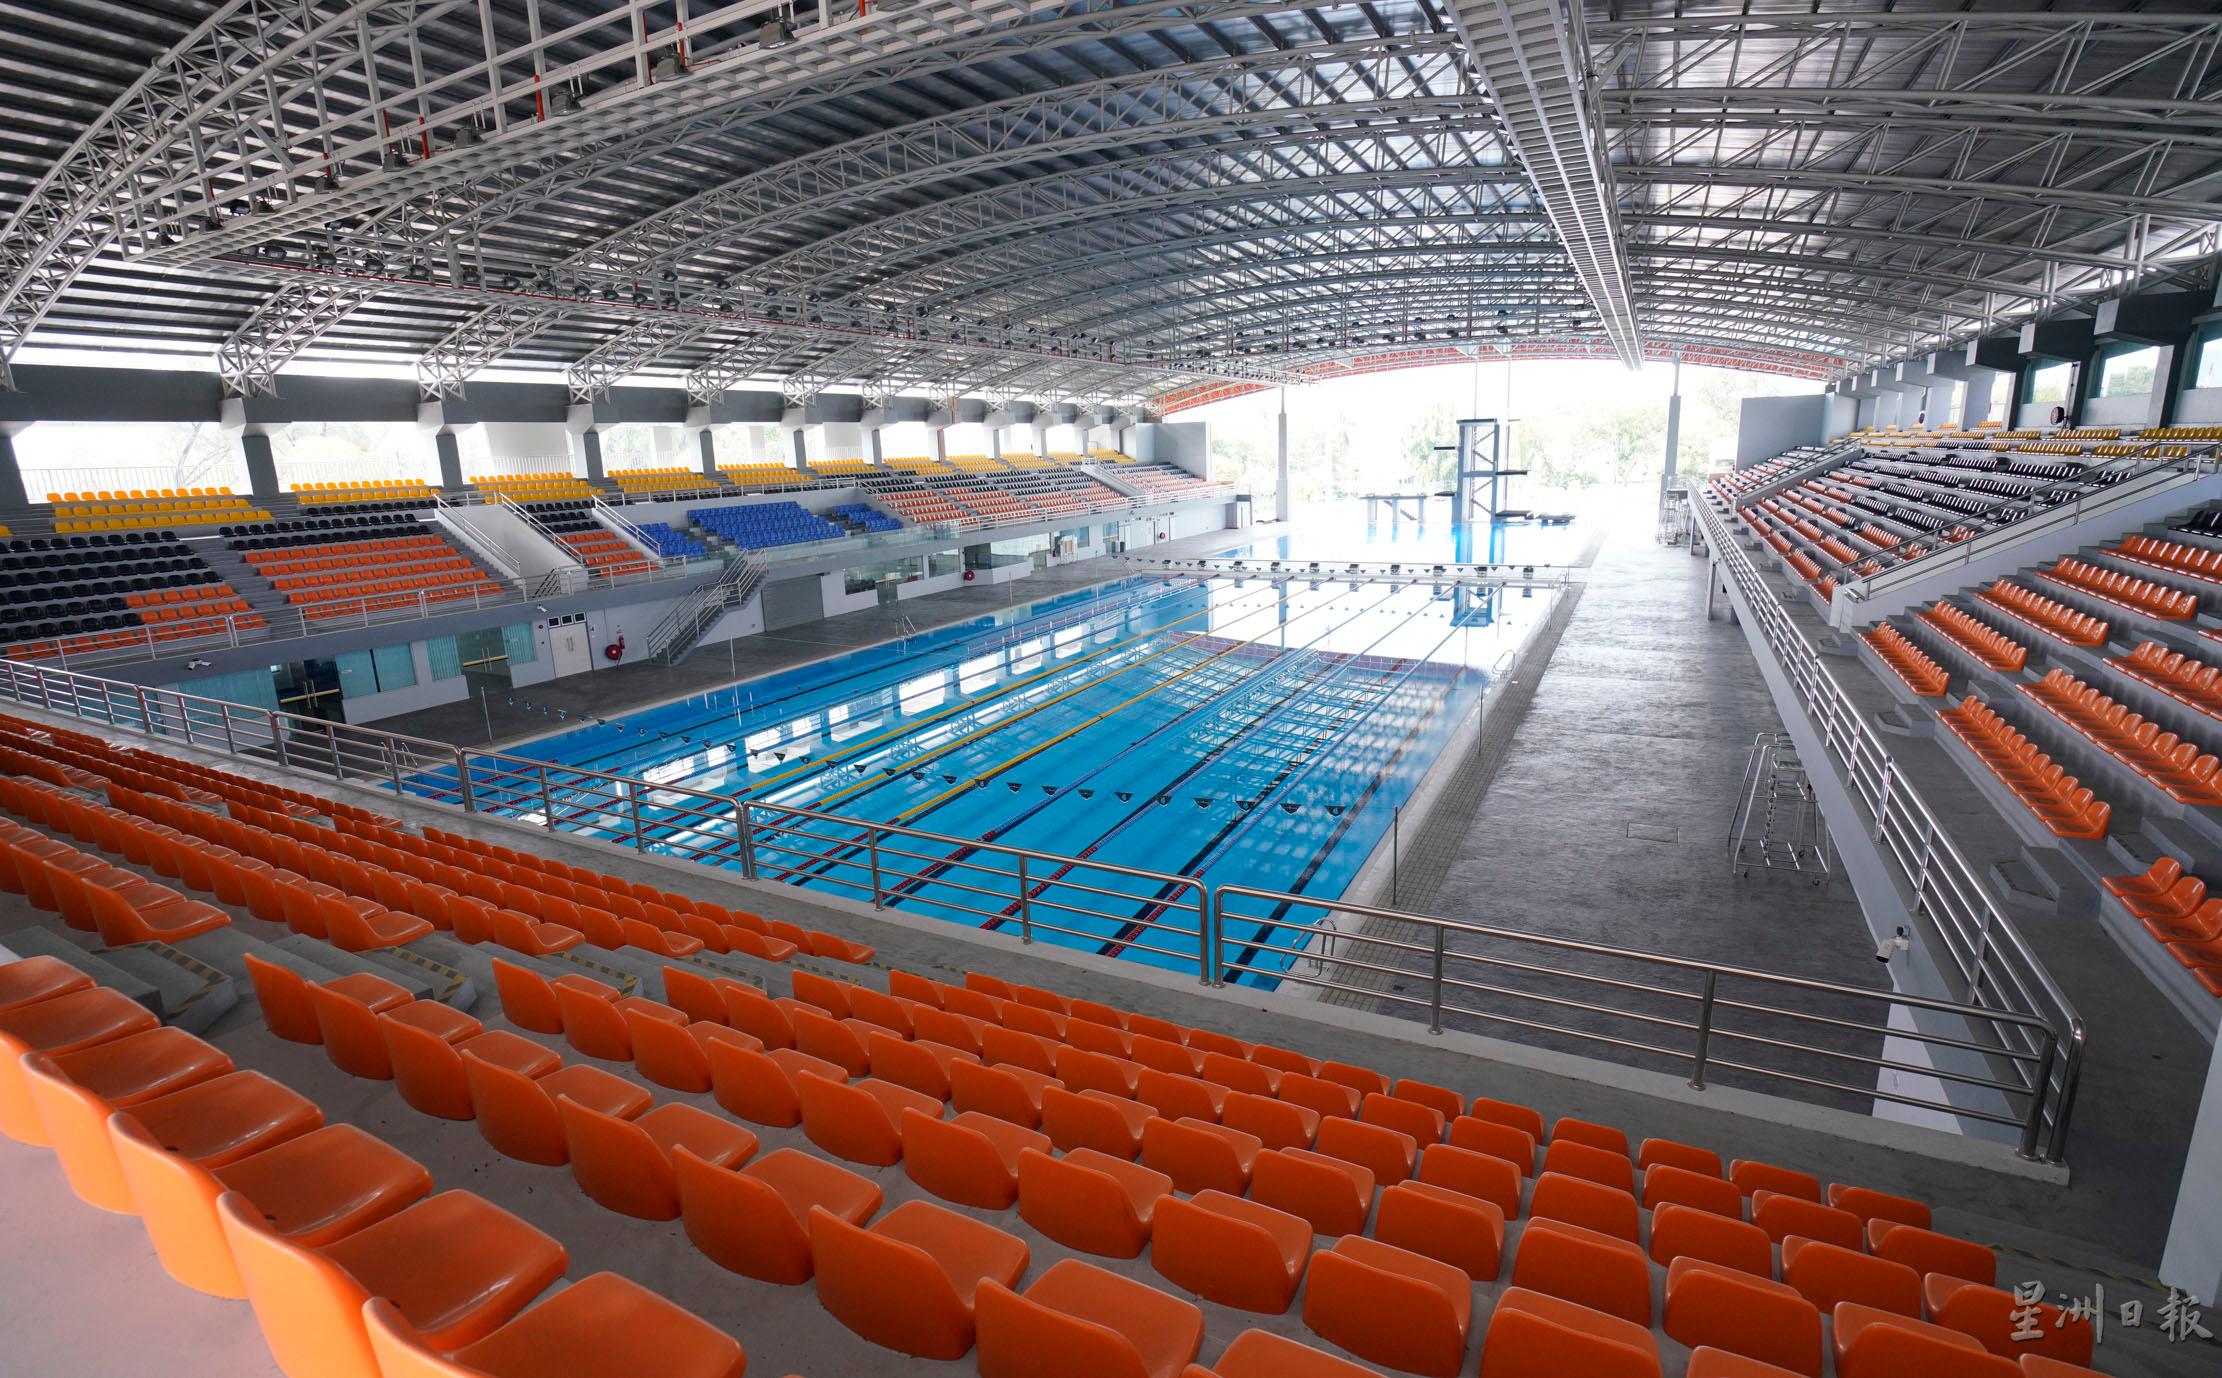 游泳馆分为室内和室外区，室内池只供运动选手训练。